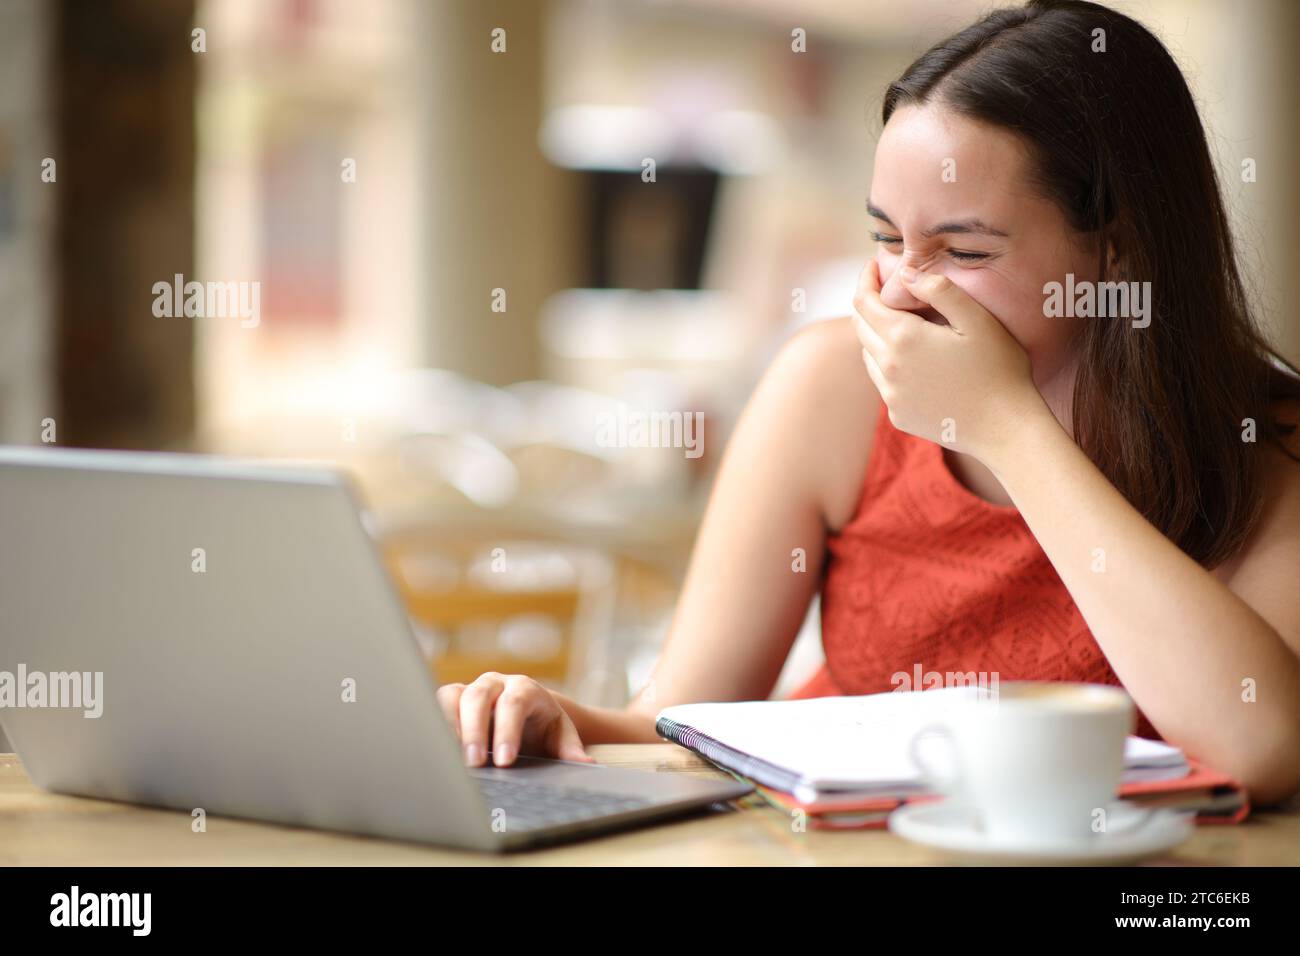 Estudiante feliz riendo fuerte viendo los medios de comunicación en el ordenador portátil en una terraza de la cafetería Foto de stock